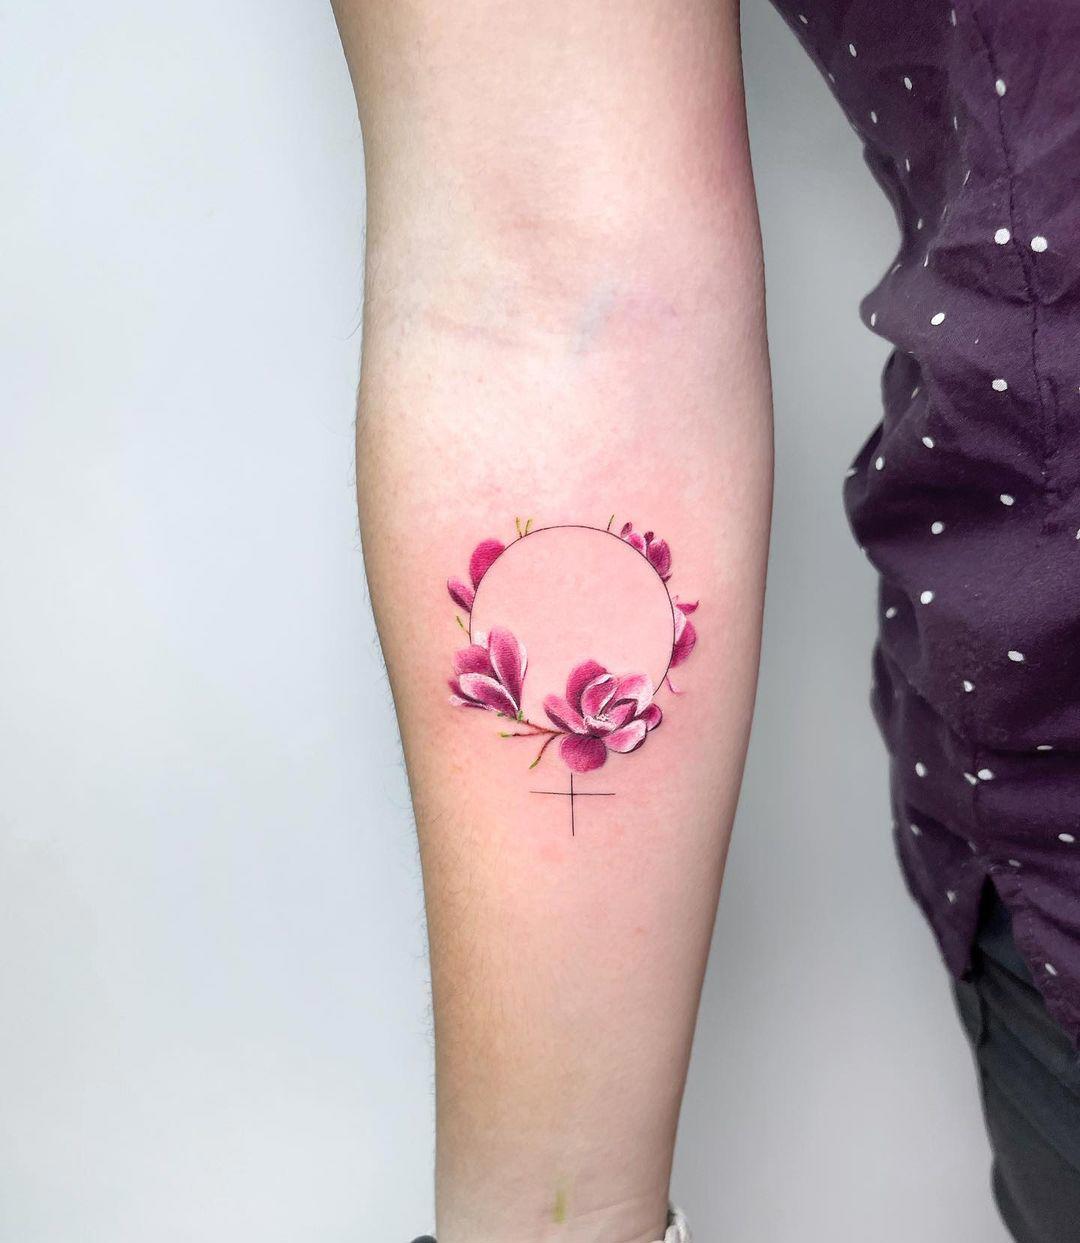 Tatuaje de símbolo feminista